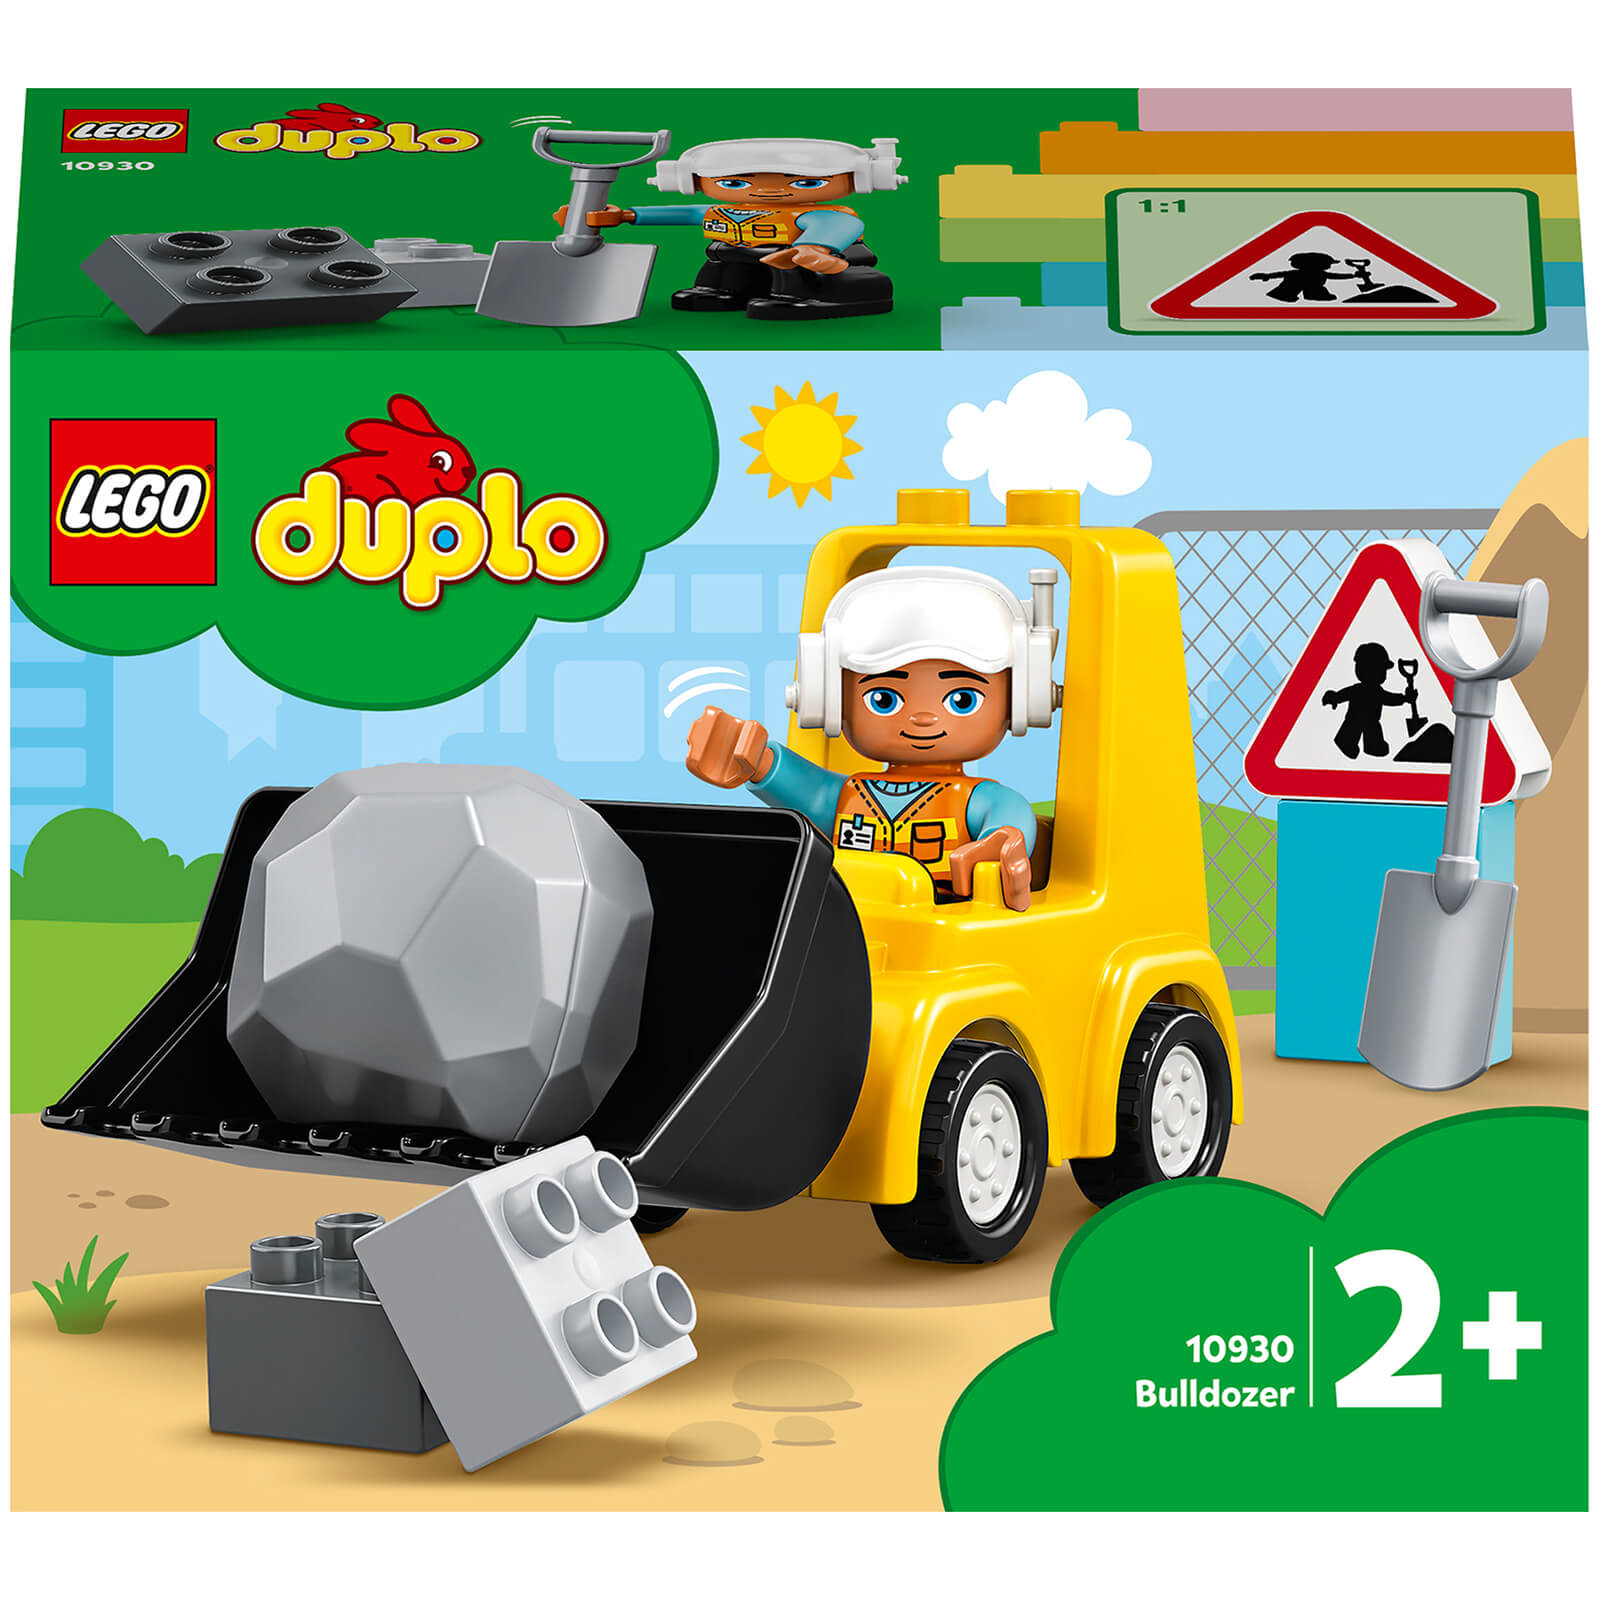 LEGO DUPLO Bulldozer Construction Vehicle Toy Set (10930)